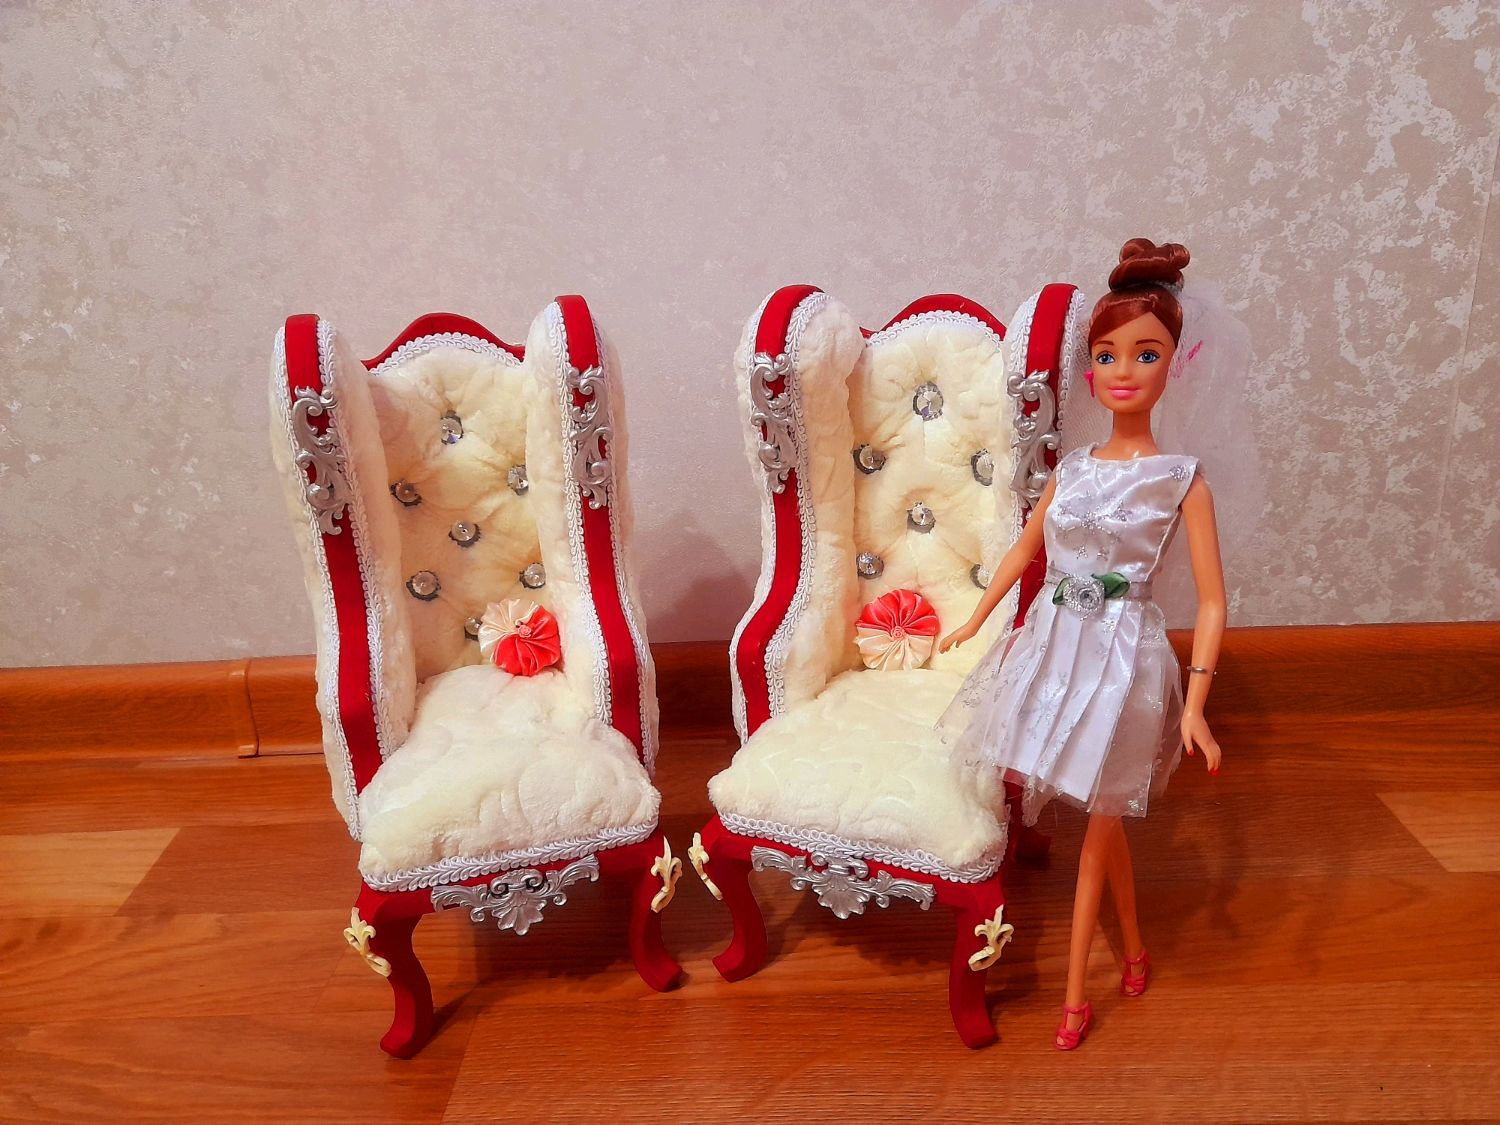 стул кресло для куклы своими руками